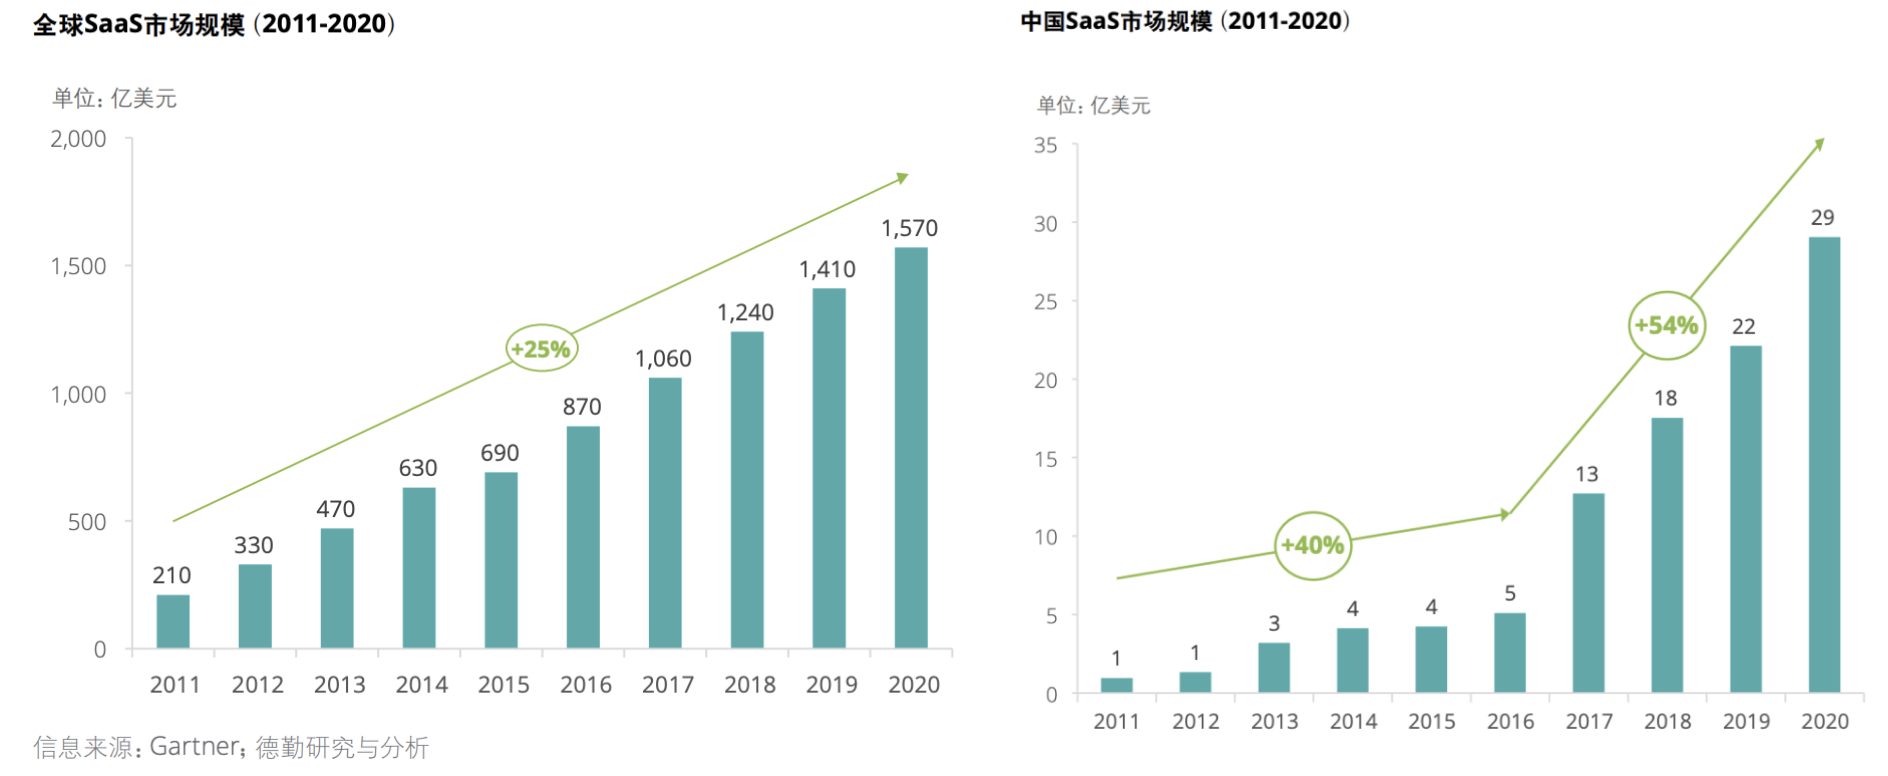 中国与全球SaaS市场规模对比